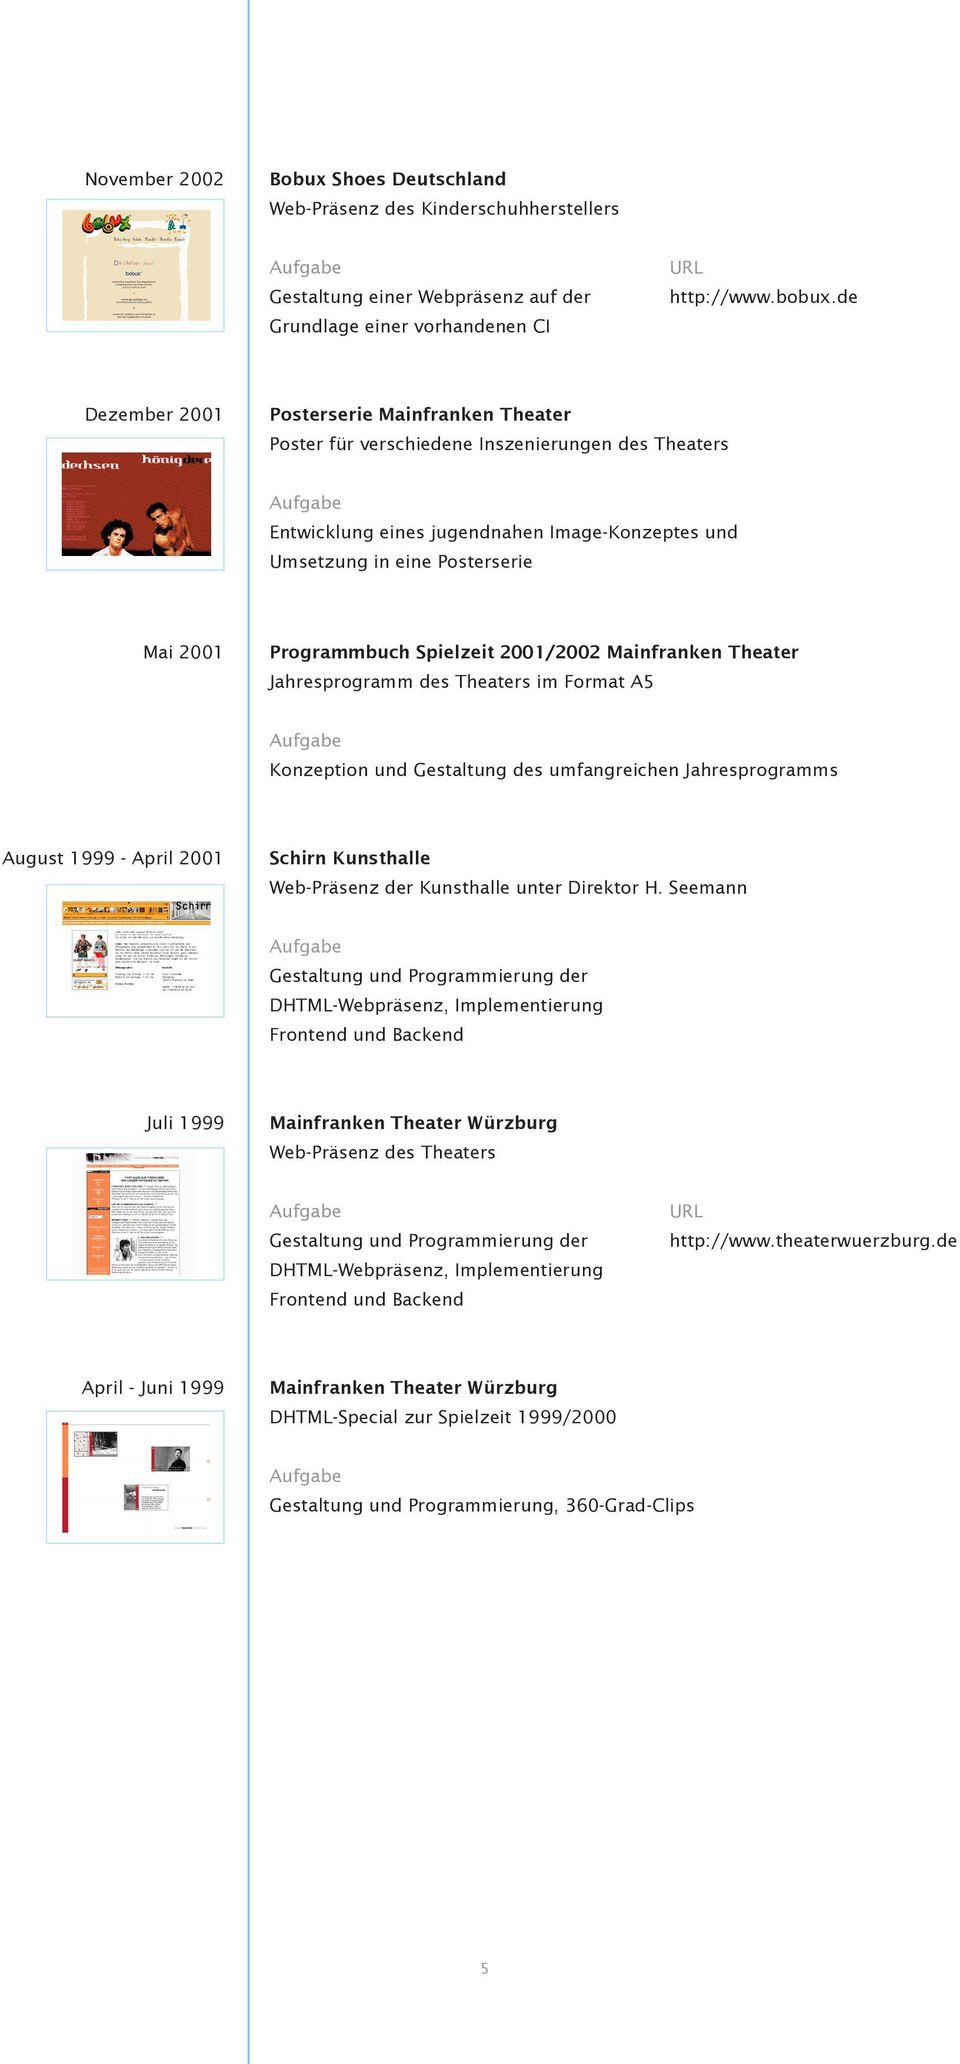 Programmbuch Spielzeit 2001/2002 Mainfranken Theater Jahresprogramm des Theaters im Format A5 Konzeption und Gestaltung des umfangreichen Jahresprogramms August 1999 - April 2001 Schirn Kunsthalle